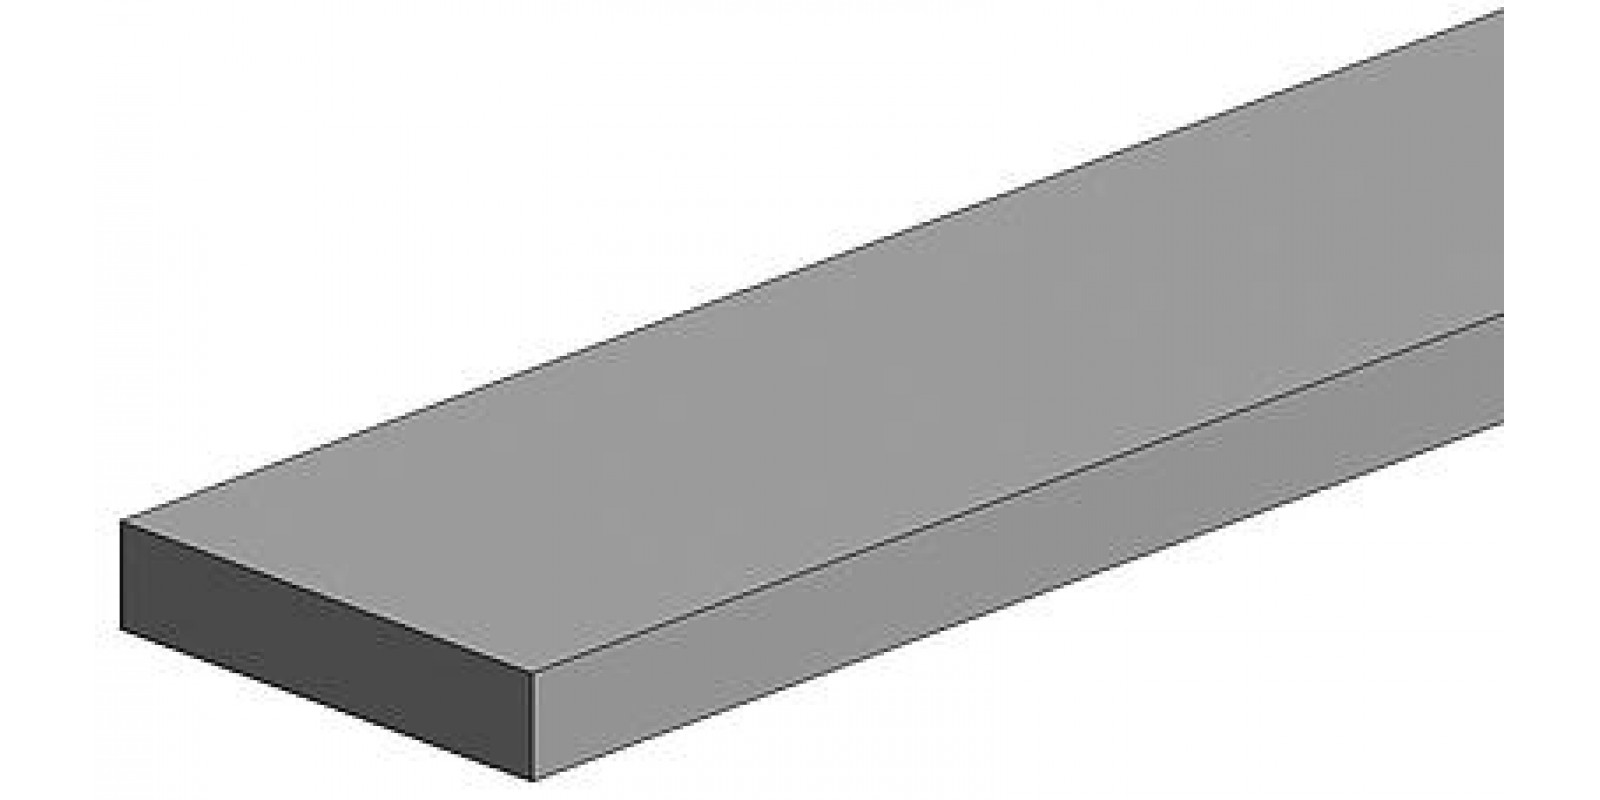 FA500120 White polystyrene square profile